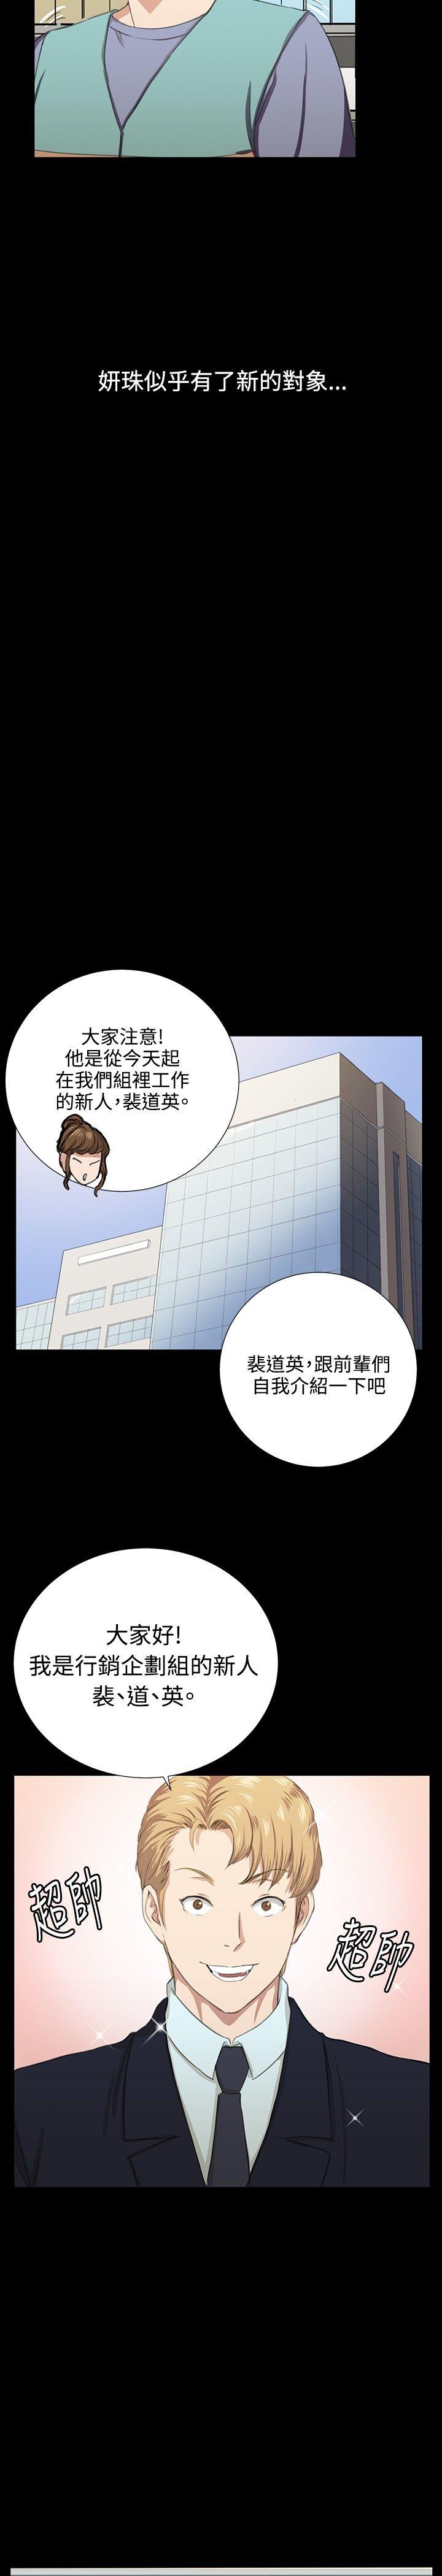 深夜便利店  最终话 漫画图片9.jpg